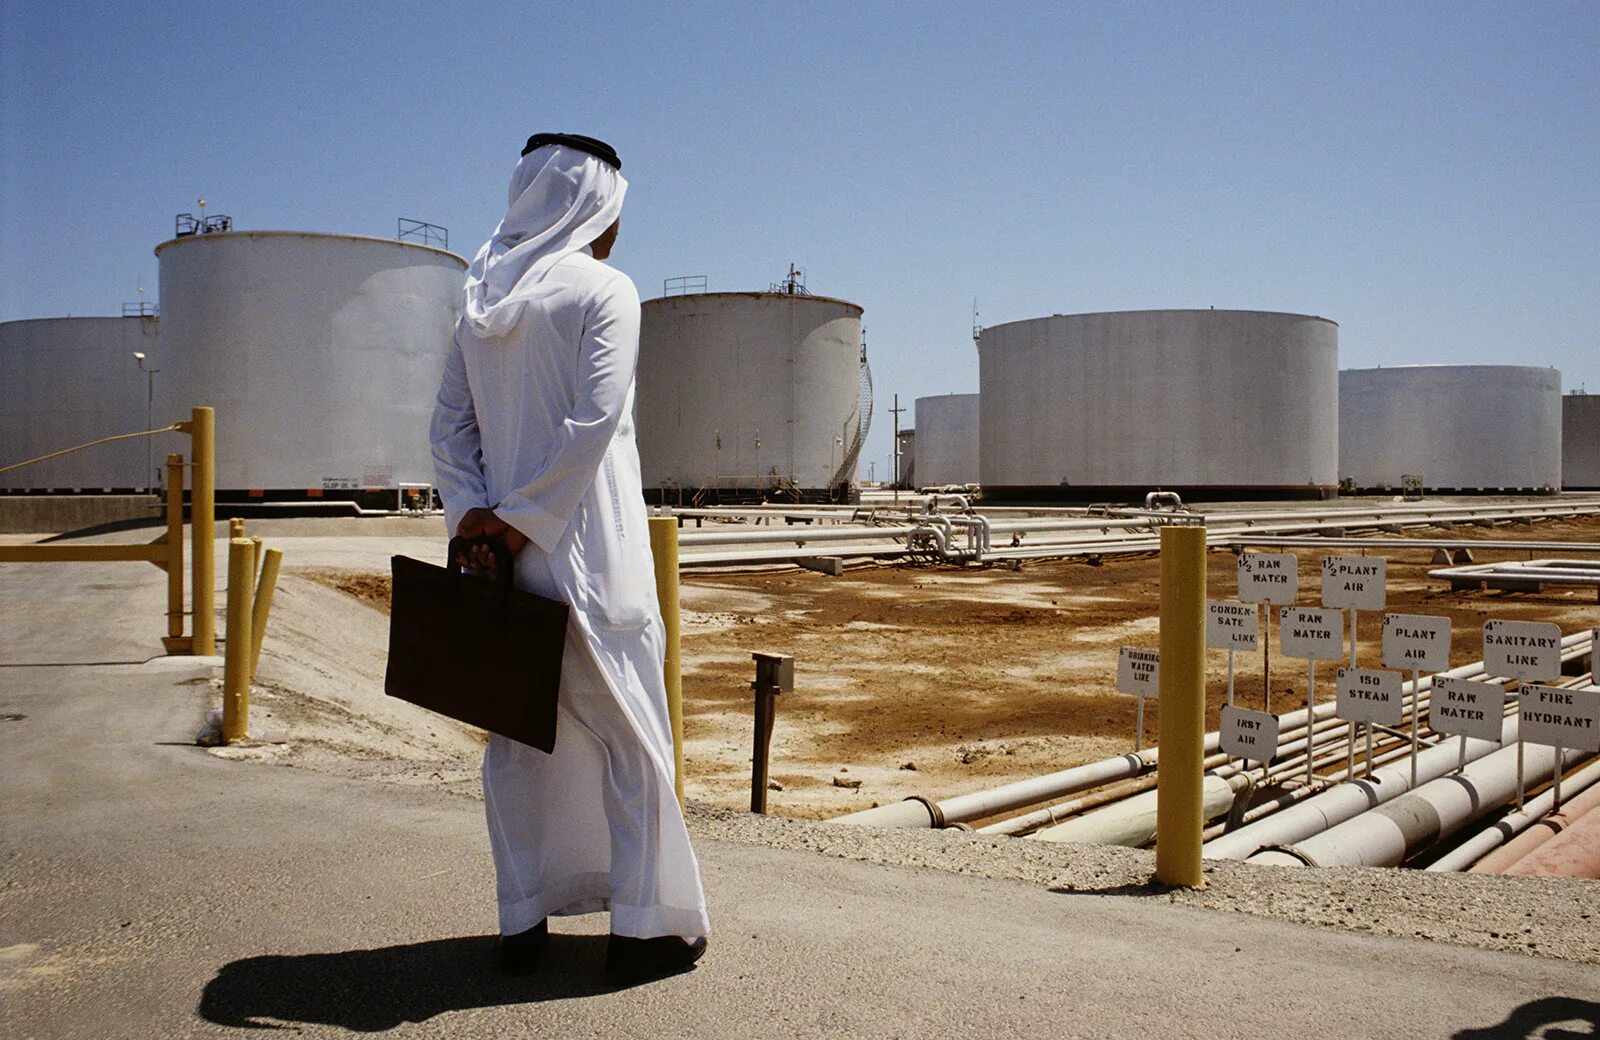 Саудовская Аравия нефть Saudi Aramco. Нефтяная компания в Саудовской Аравии Aramco. Добыча нефти Сауди Арамко. Завод в Саудовской Аравии Арамко. Саудовская аравия какая нефть